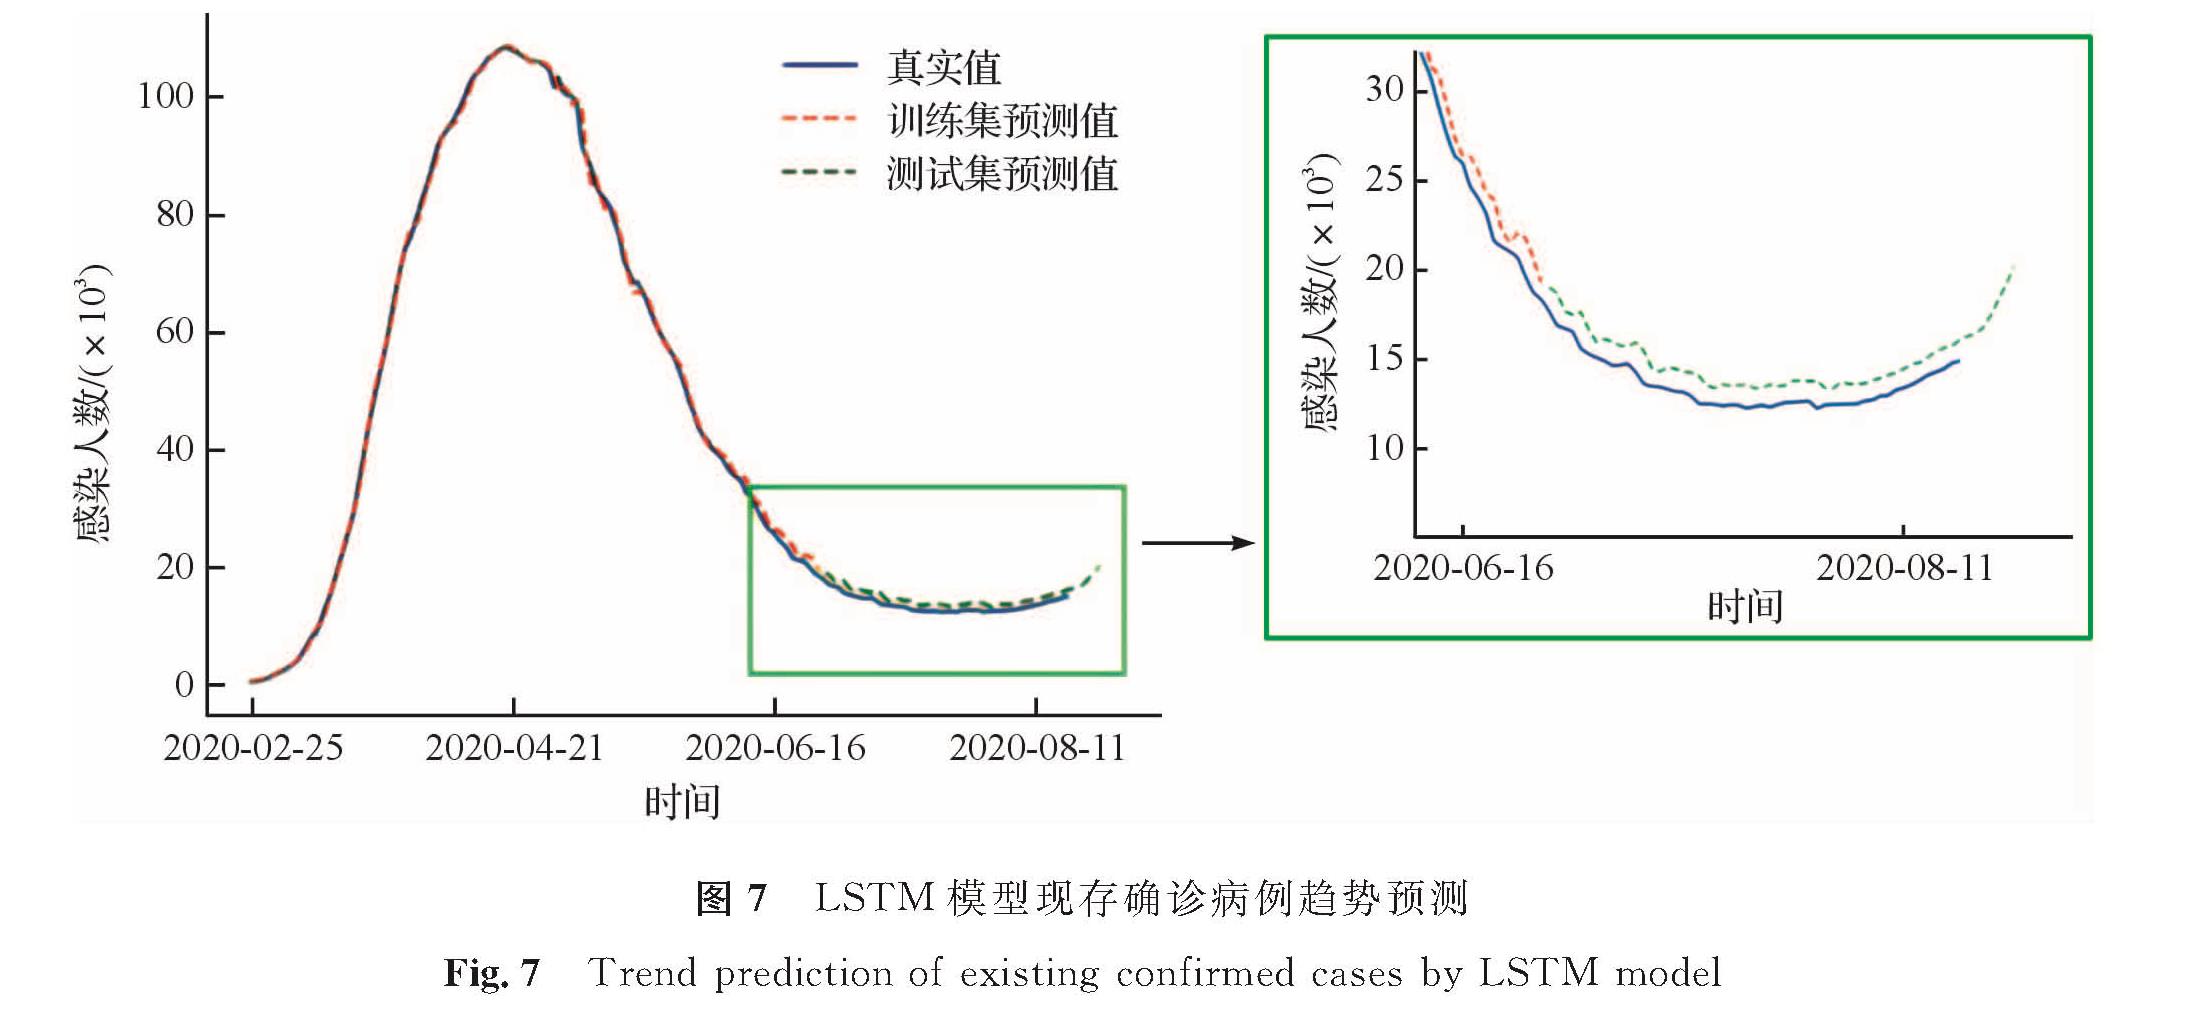 图7 LSTM模型现存确诊病例趋势预测<br/>Fig.7 Trend prediction of existing confirmed cases by LSTM model